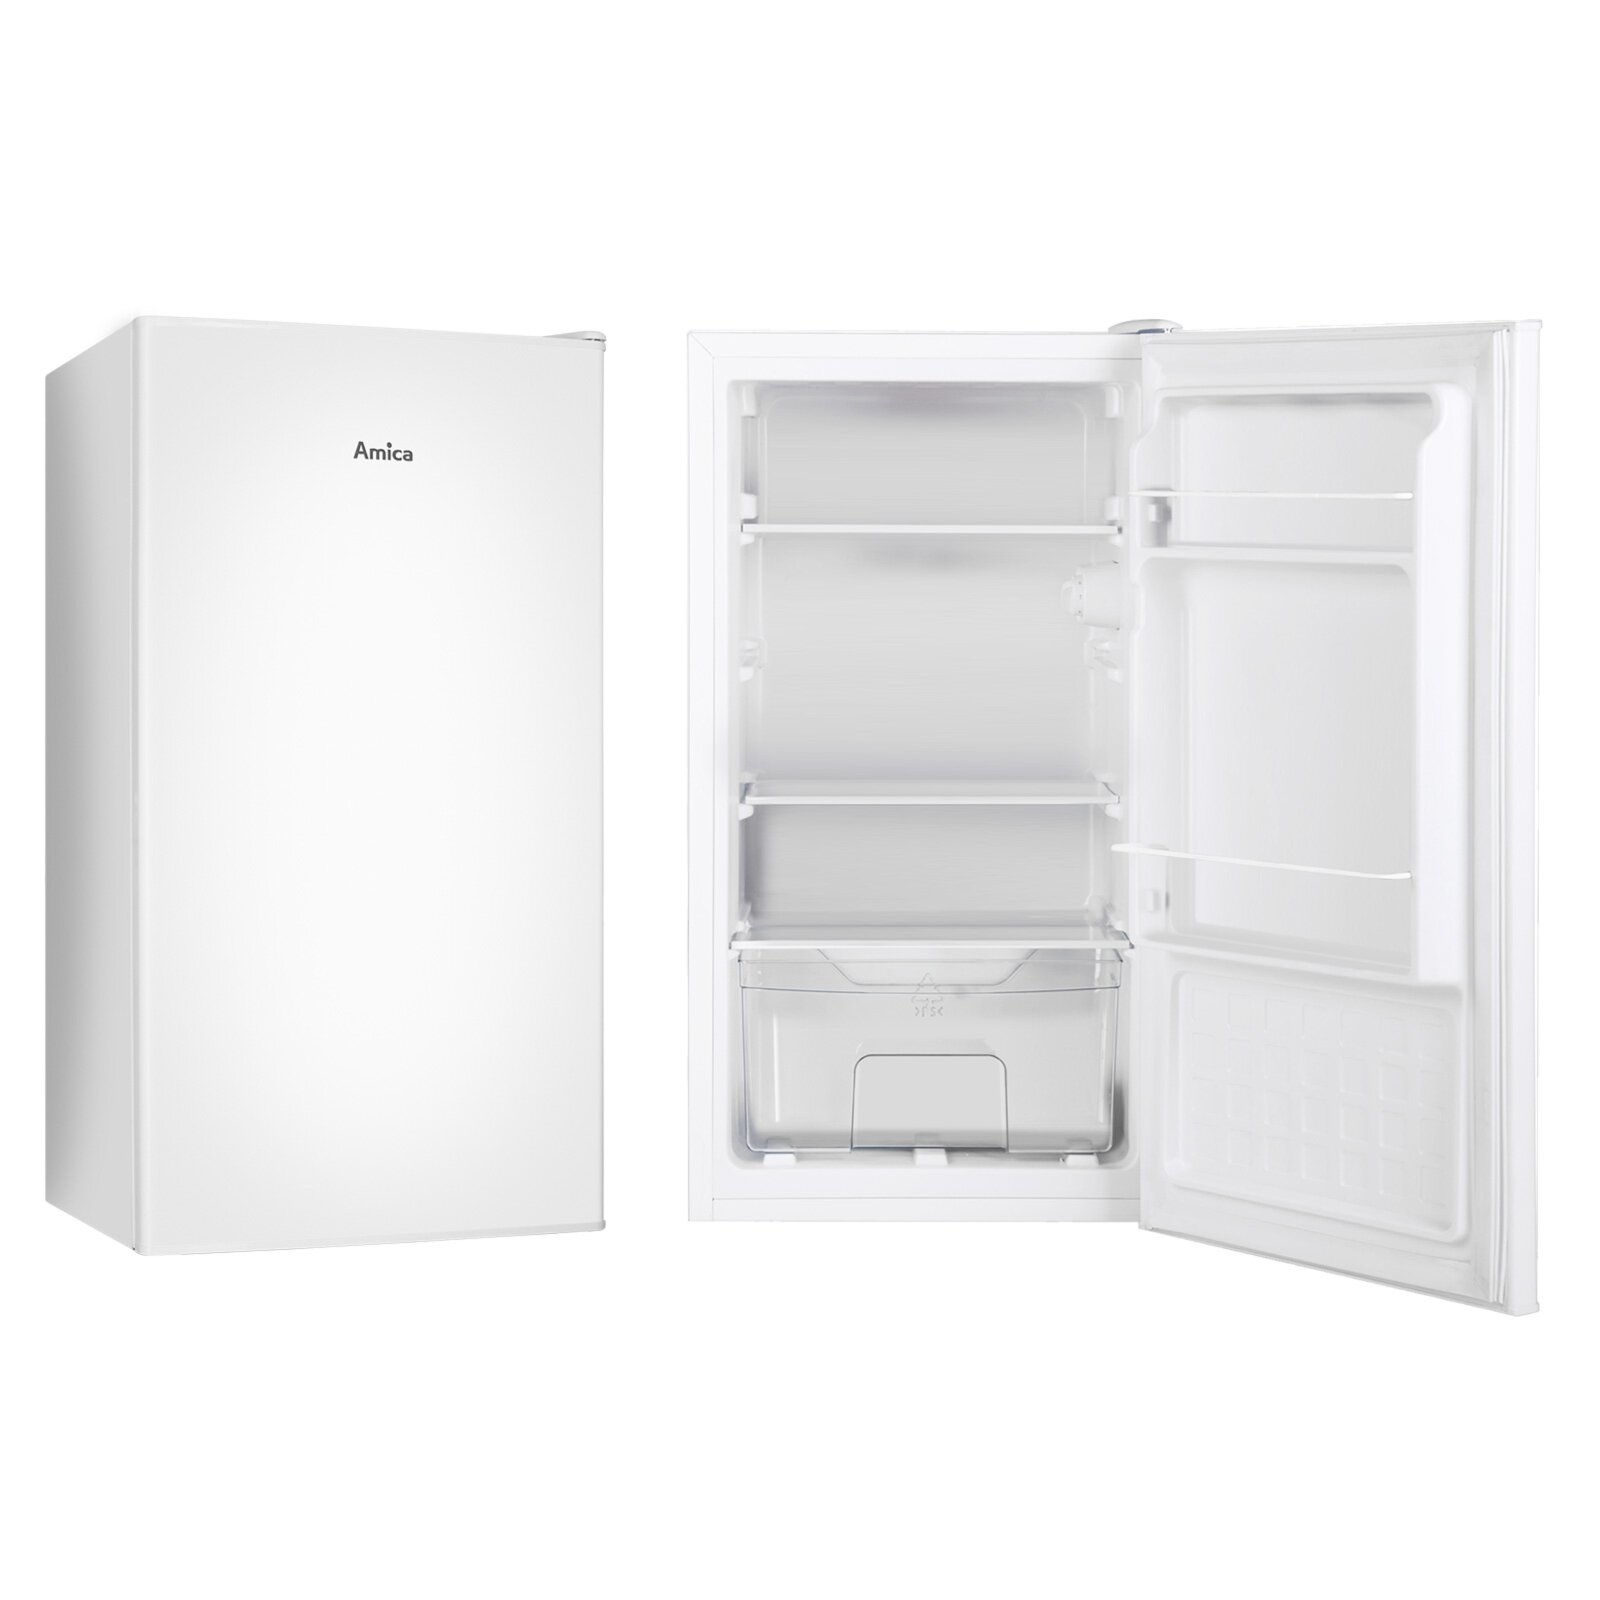 AMICA Vollraum-Kühlschrank weiß Online 116 - VKS 351 bei ROLLER W kaufen E | 